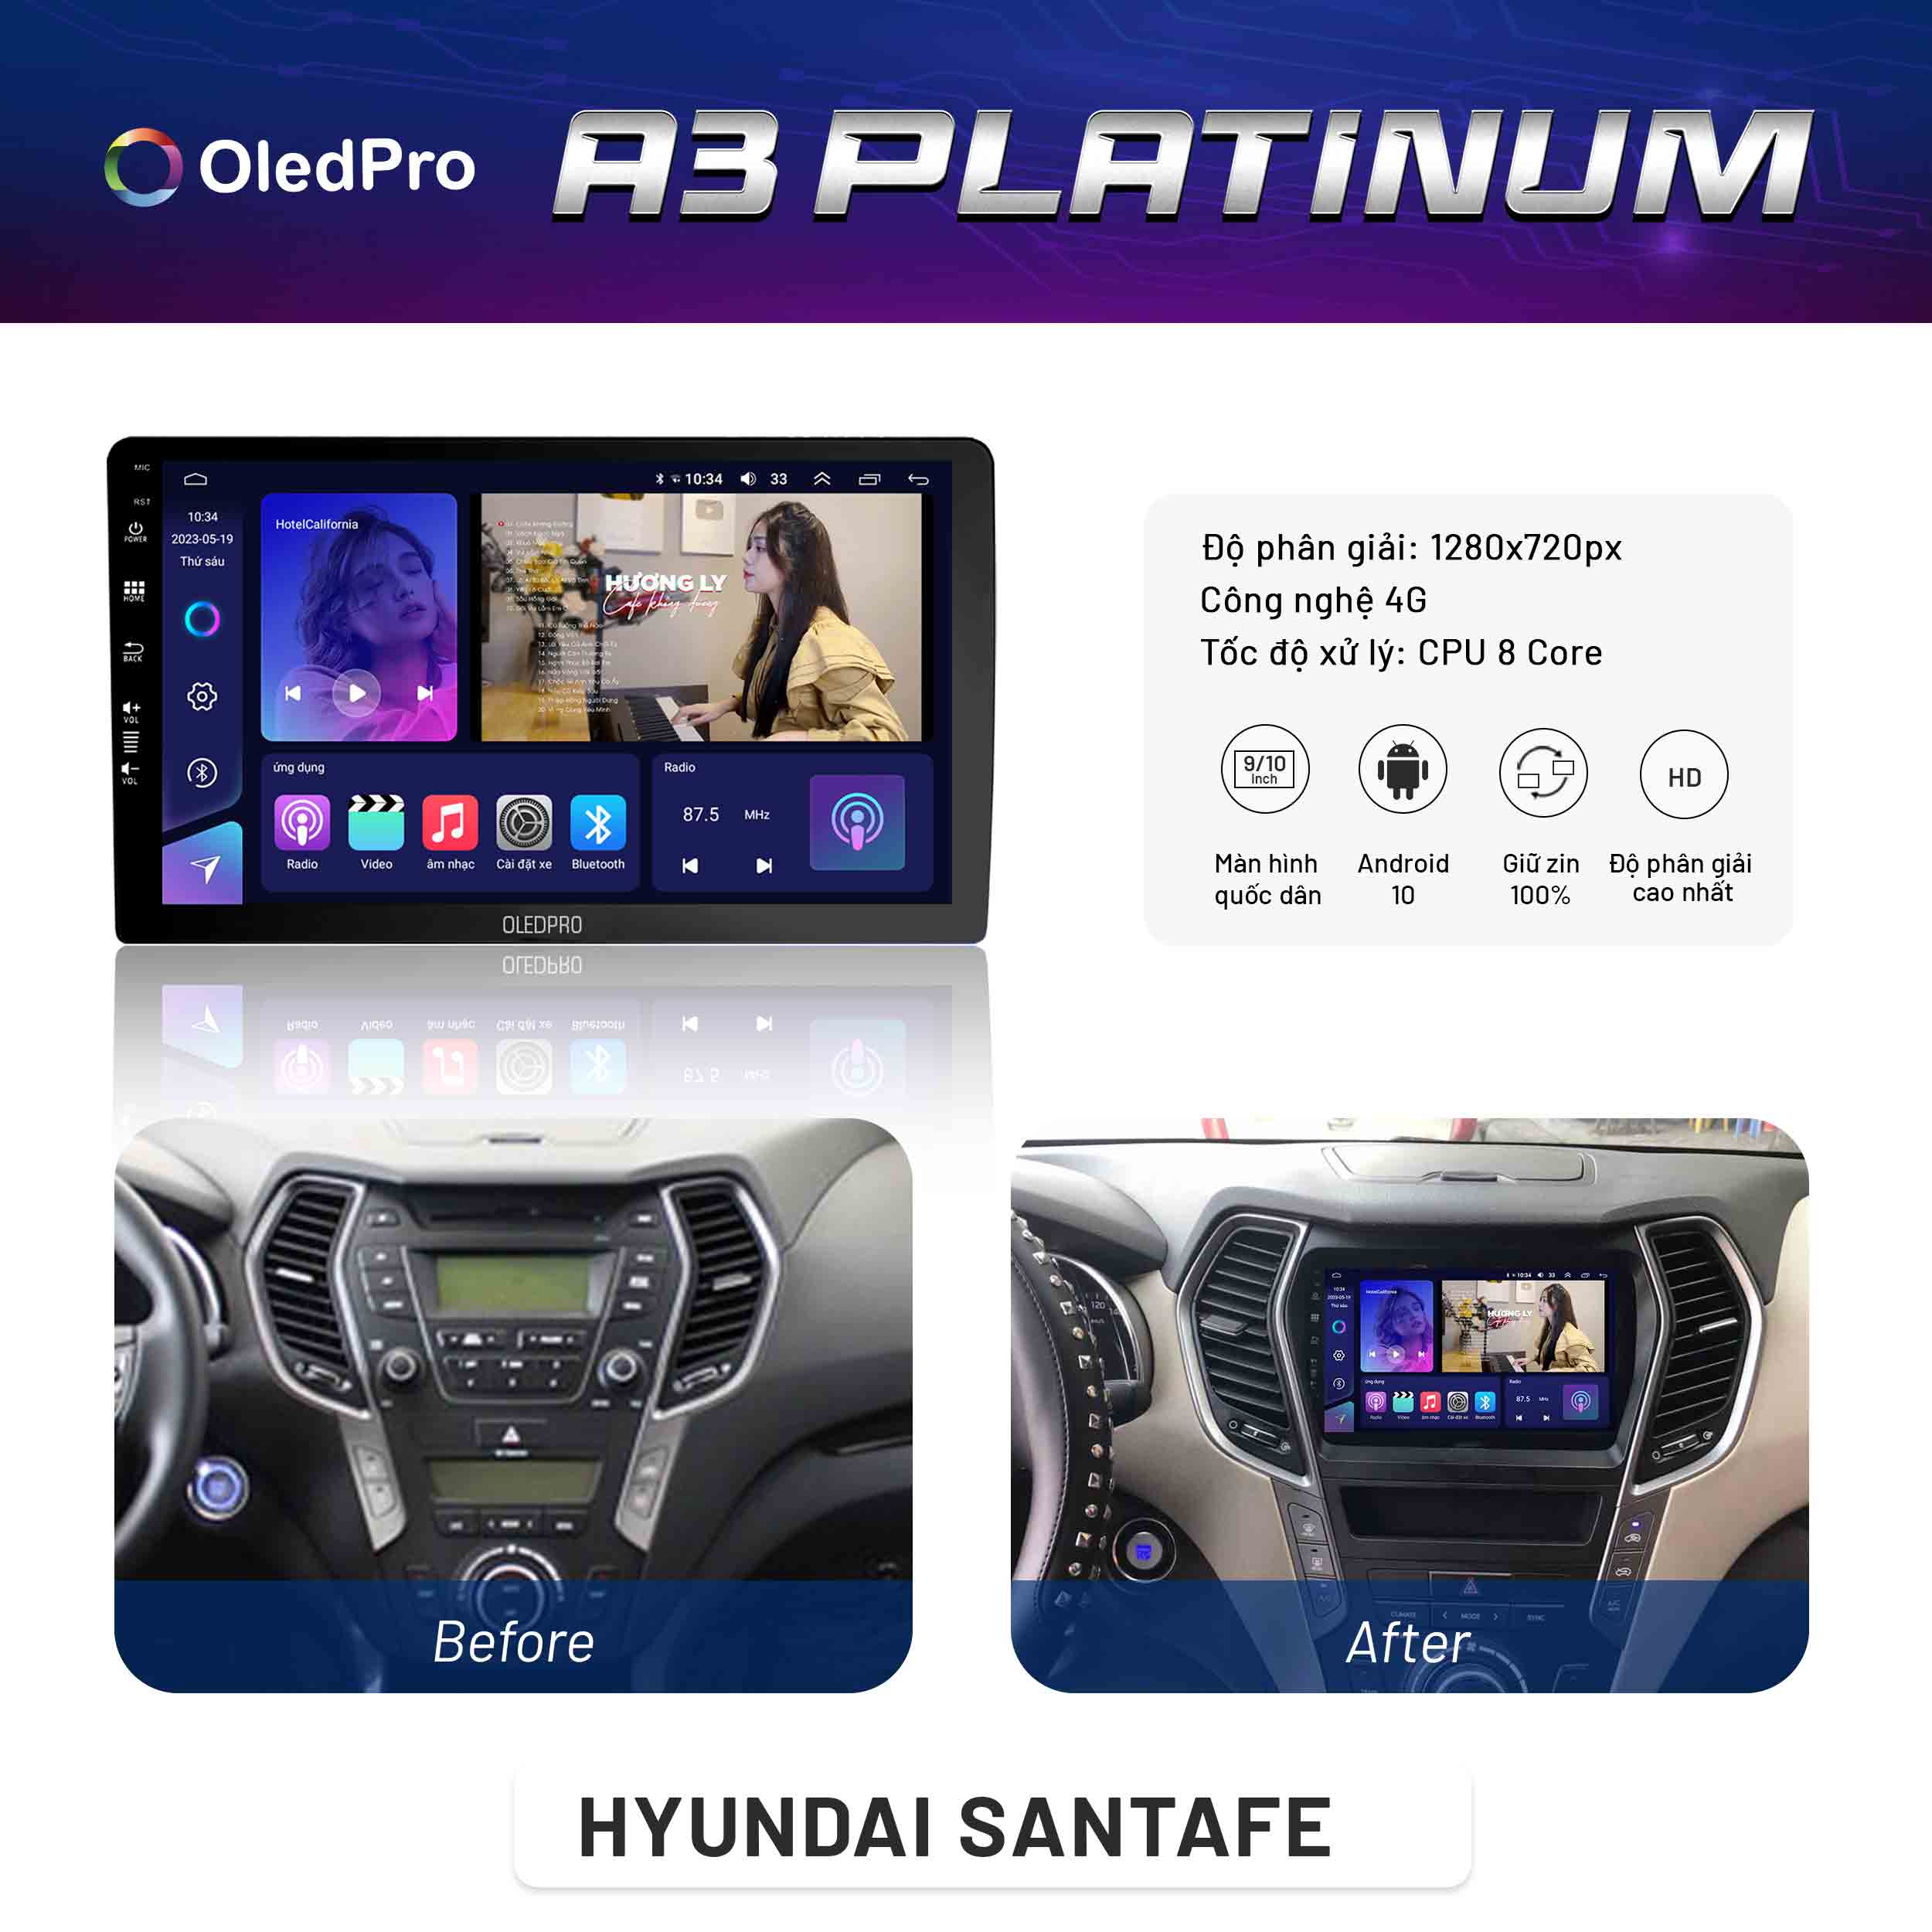 Hyundai Santafe